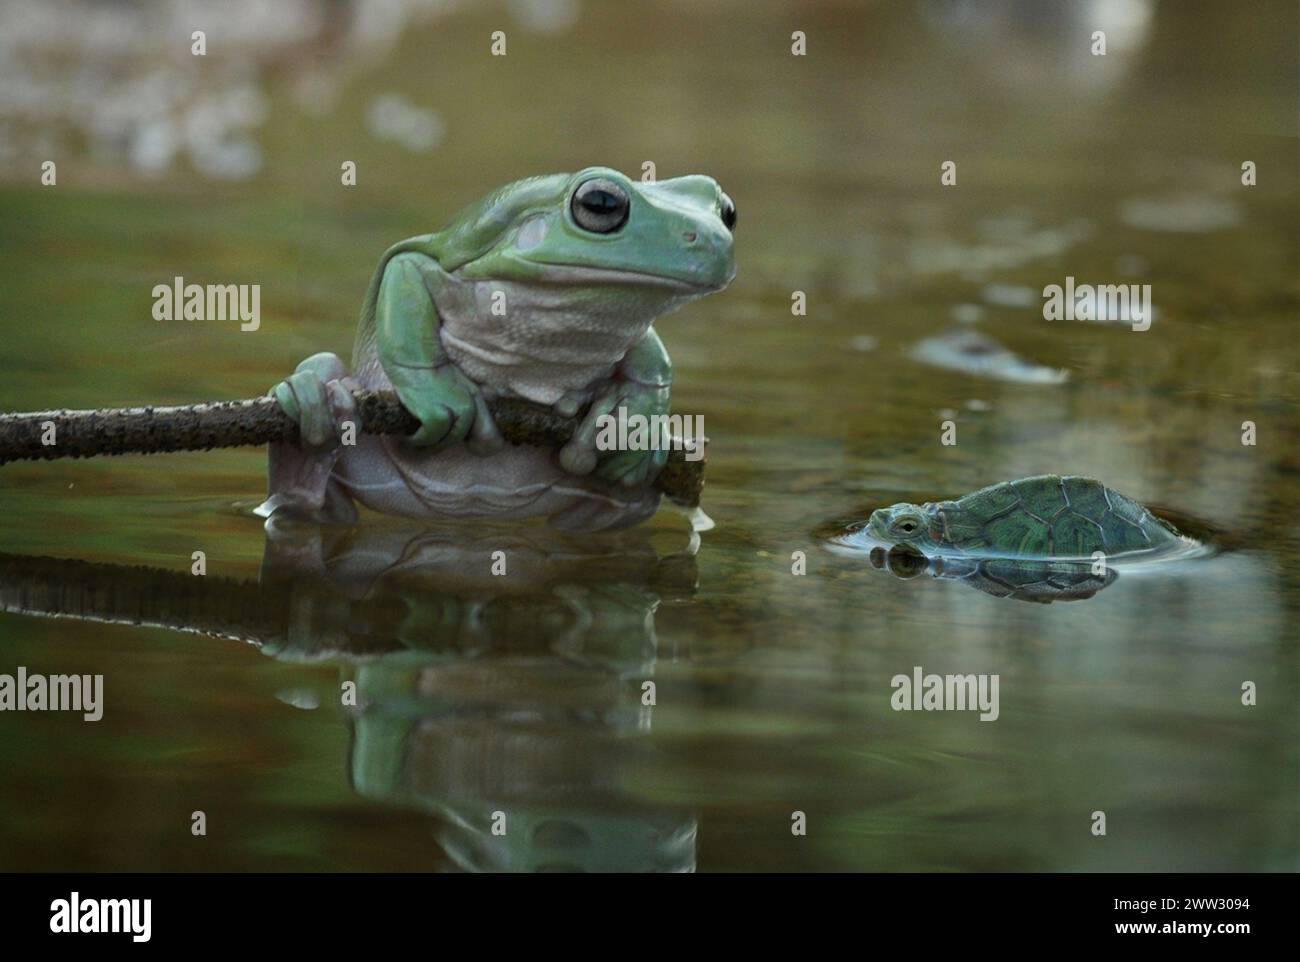 Un amico di Frog, che guarda la TARTARUGA INDONESIA, Una TARTARUGA ha ribaltato le carte in tavola su una rana appollaiandosi sulla testa per una giostra. Scattato nella città di Foto Stock